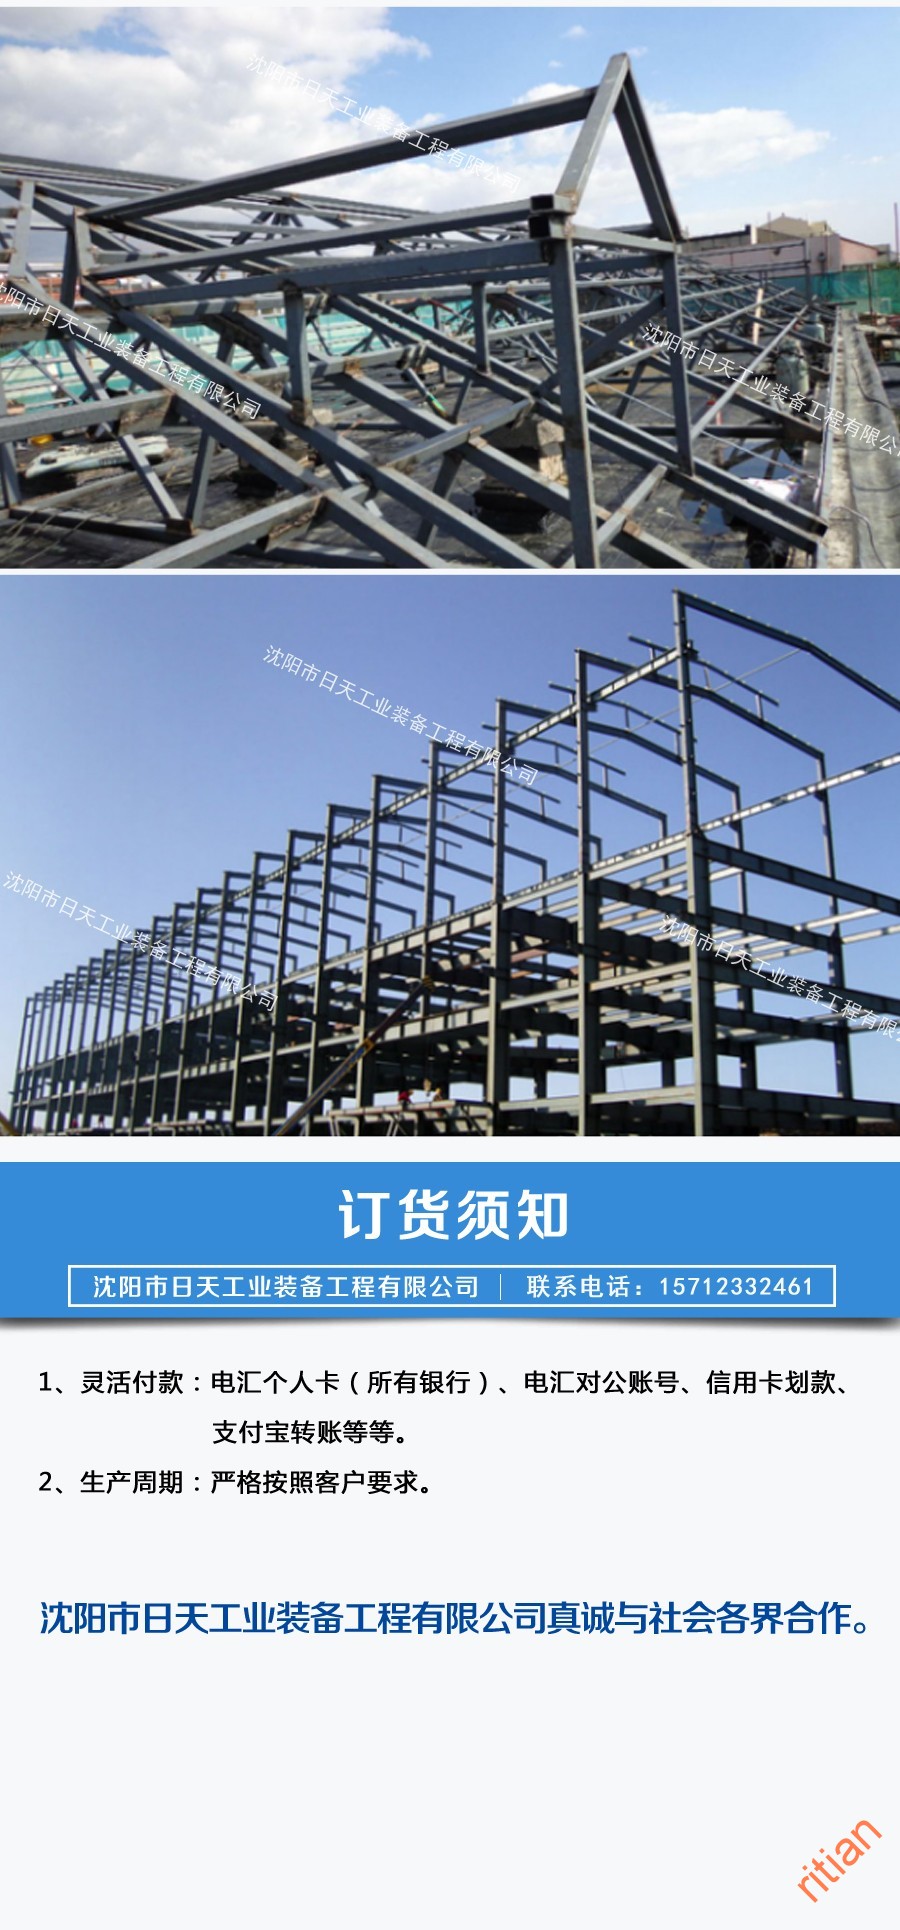 钢结构工程-06.jpg